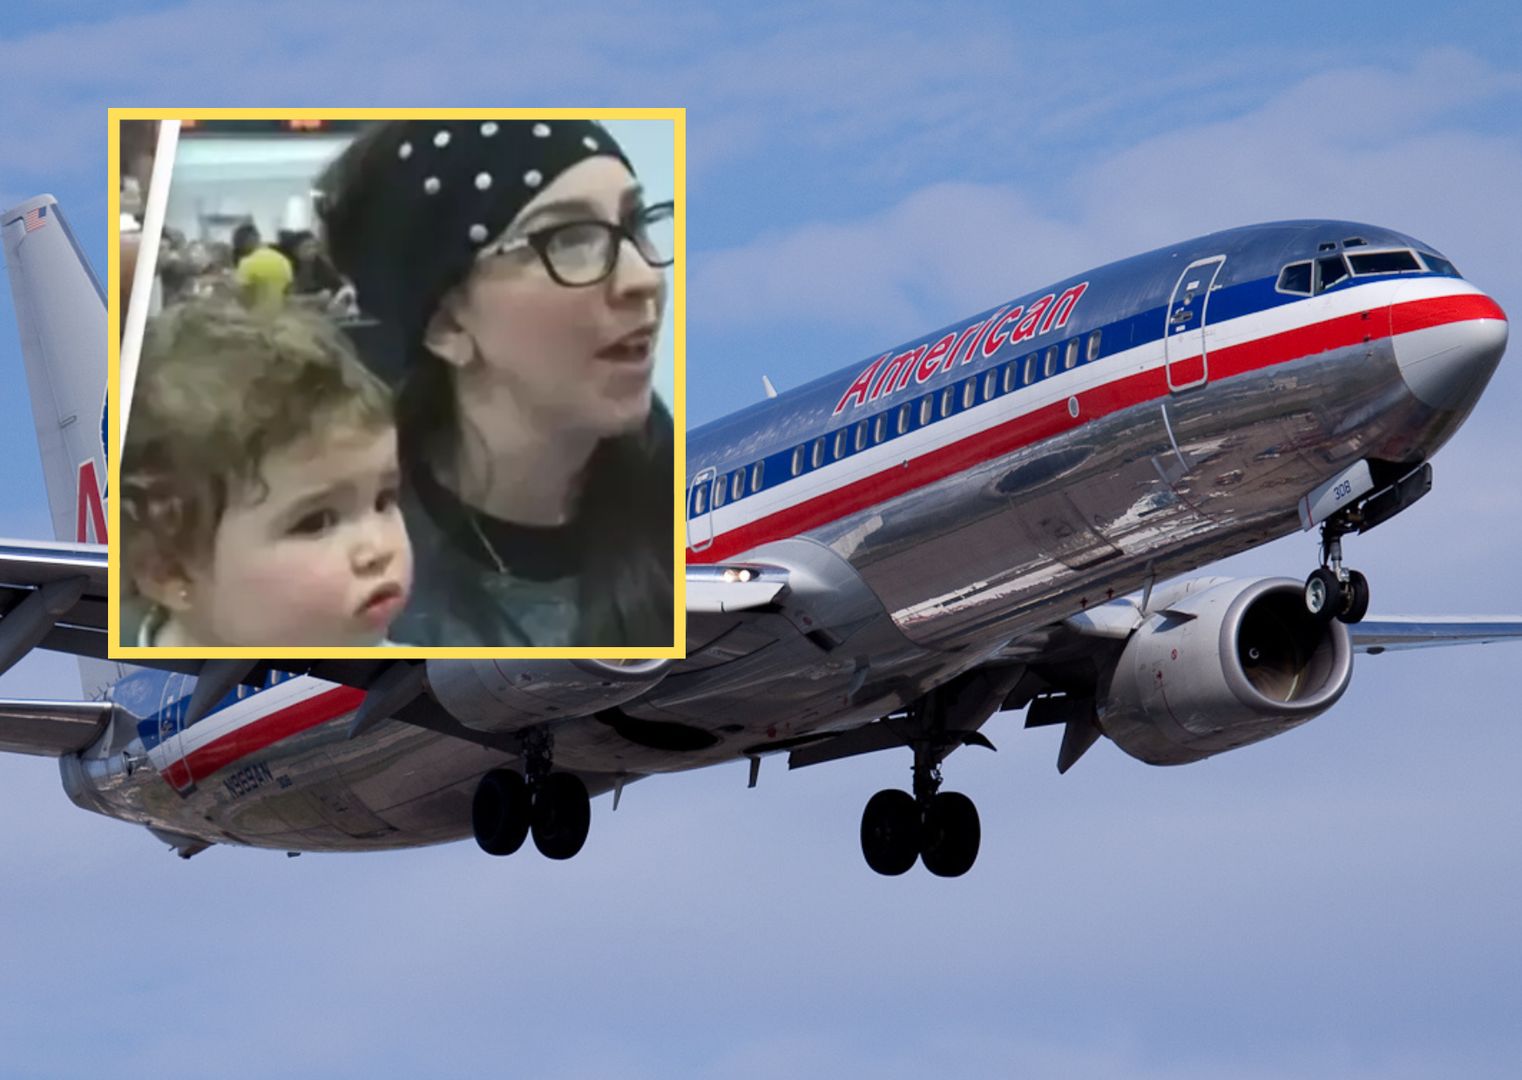 Kazali rodzinie opuścić samolot. Powodem miał być ich zapach